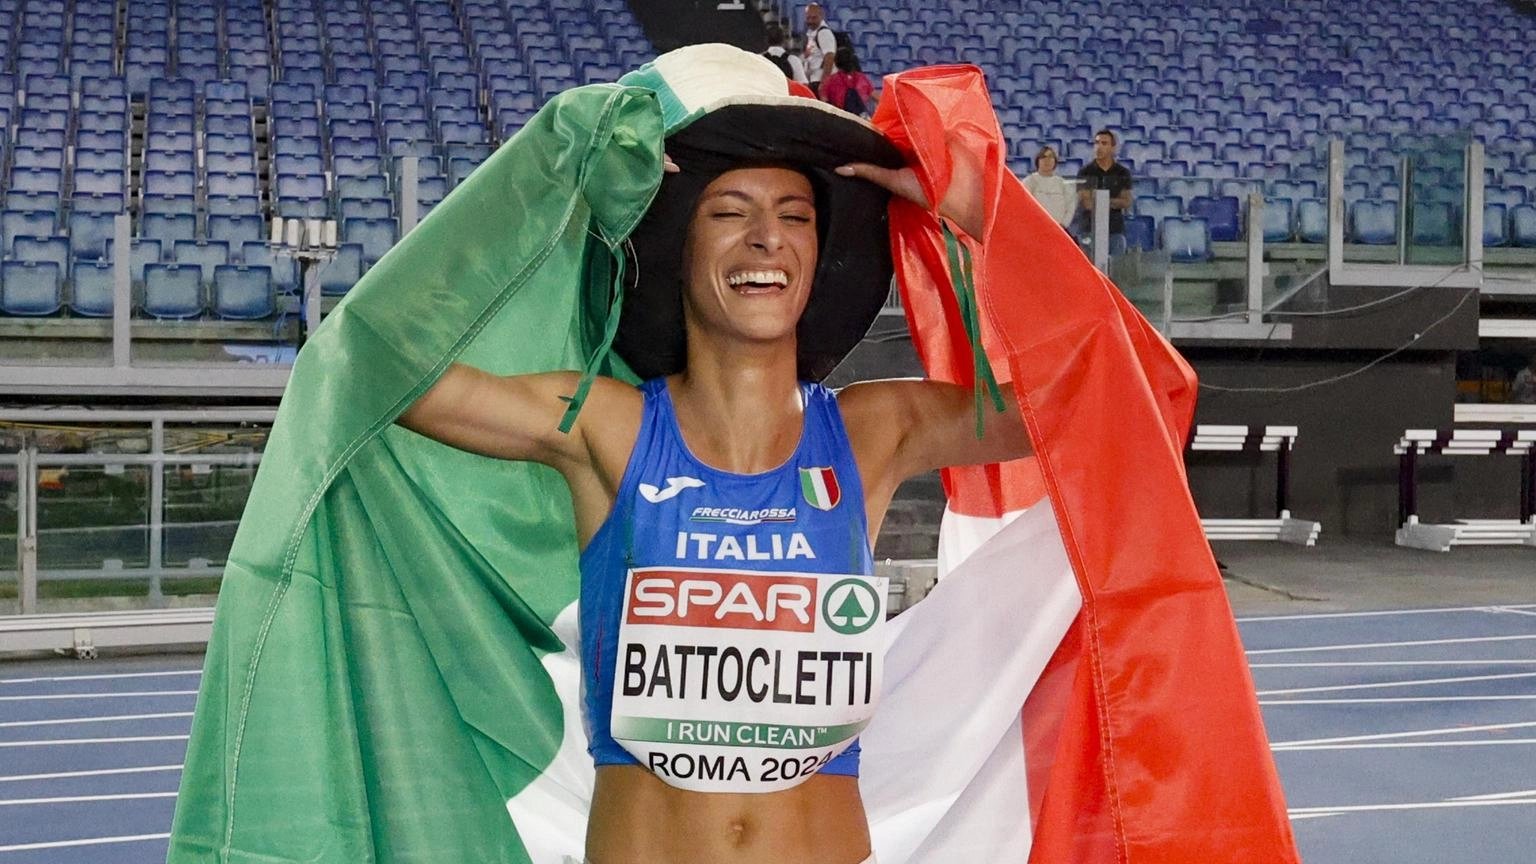 Europei atletica: Battocletti 'gare così ripagano sacrifici'